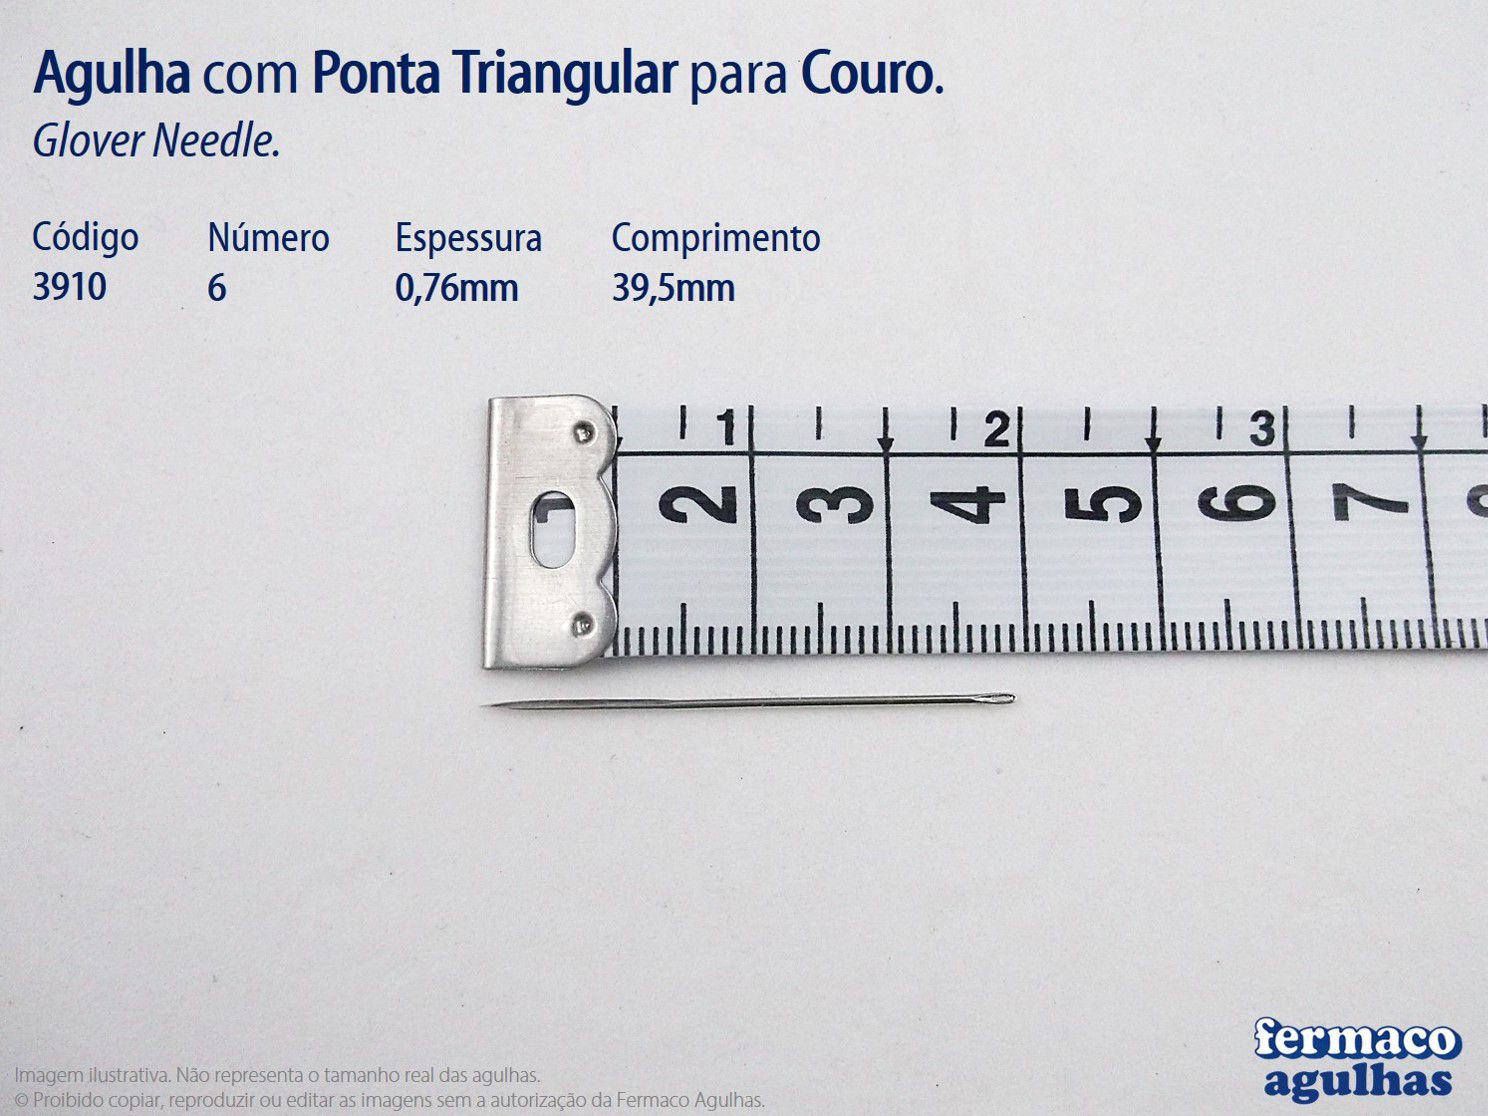 Agulha para Couro com Ponta Triangular número 6 (39,5mm x 0,76mm). Agulha Glover Needle 6.